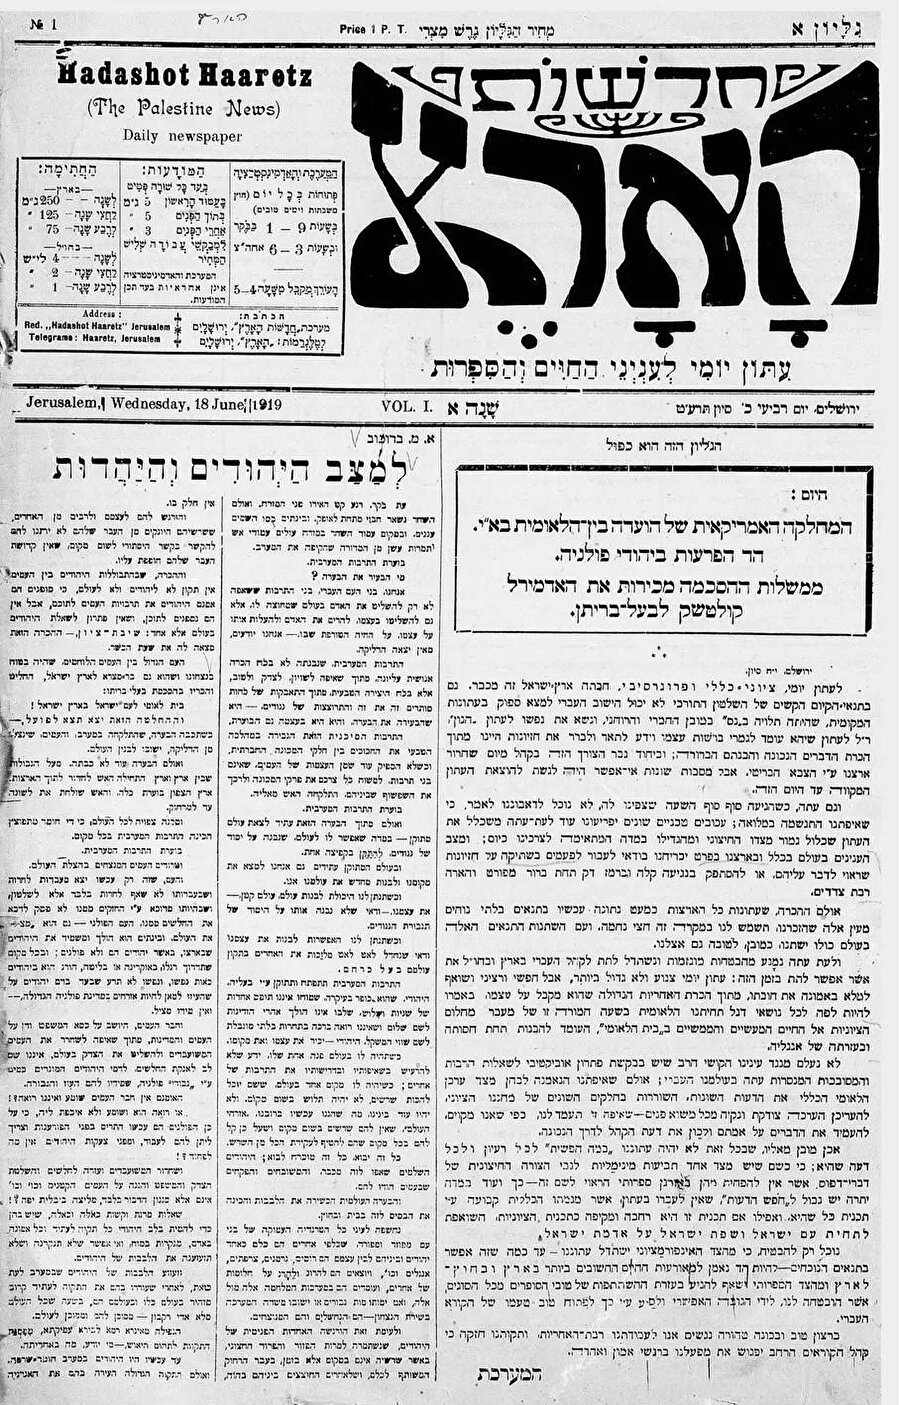 Kurulduğu ilk yıllarda adı “Hadoshot Haaretz” (Vatan Haberleri) olan Haaretz gazetesinin 18 Haziran 1919 tarihli ilk sayısı. “Filistin Haberleri” alt başlığı ise dikkati çekiyor.